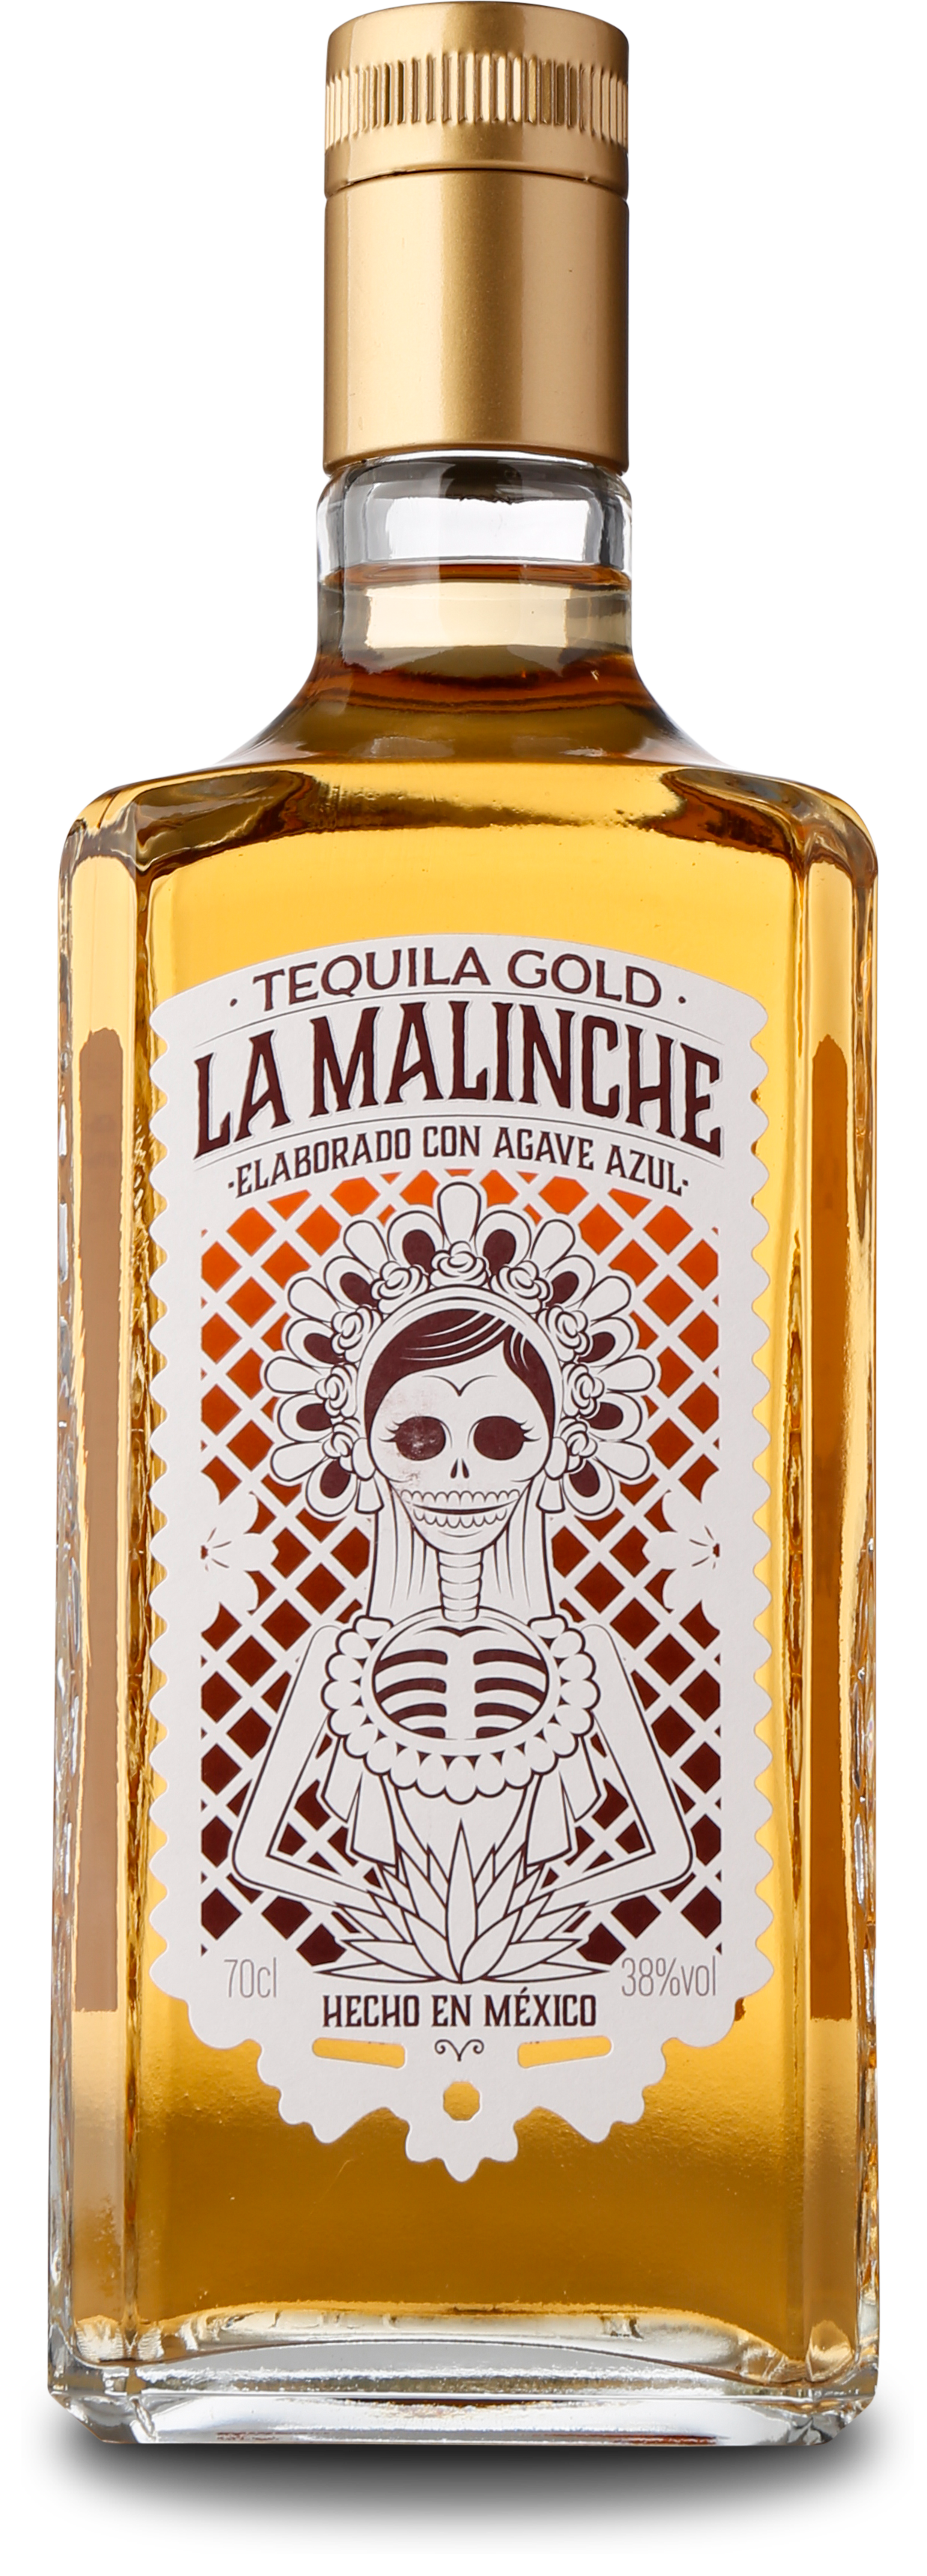 La Malinche Gold Tequila 38%, 70 cl